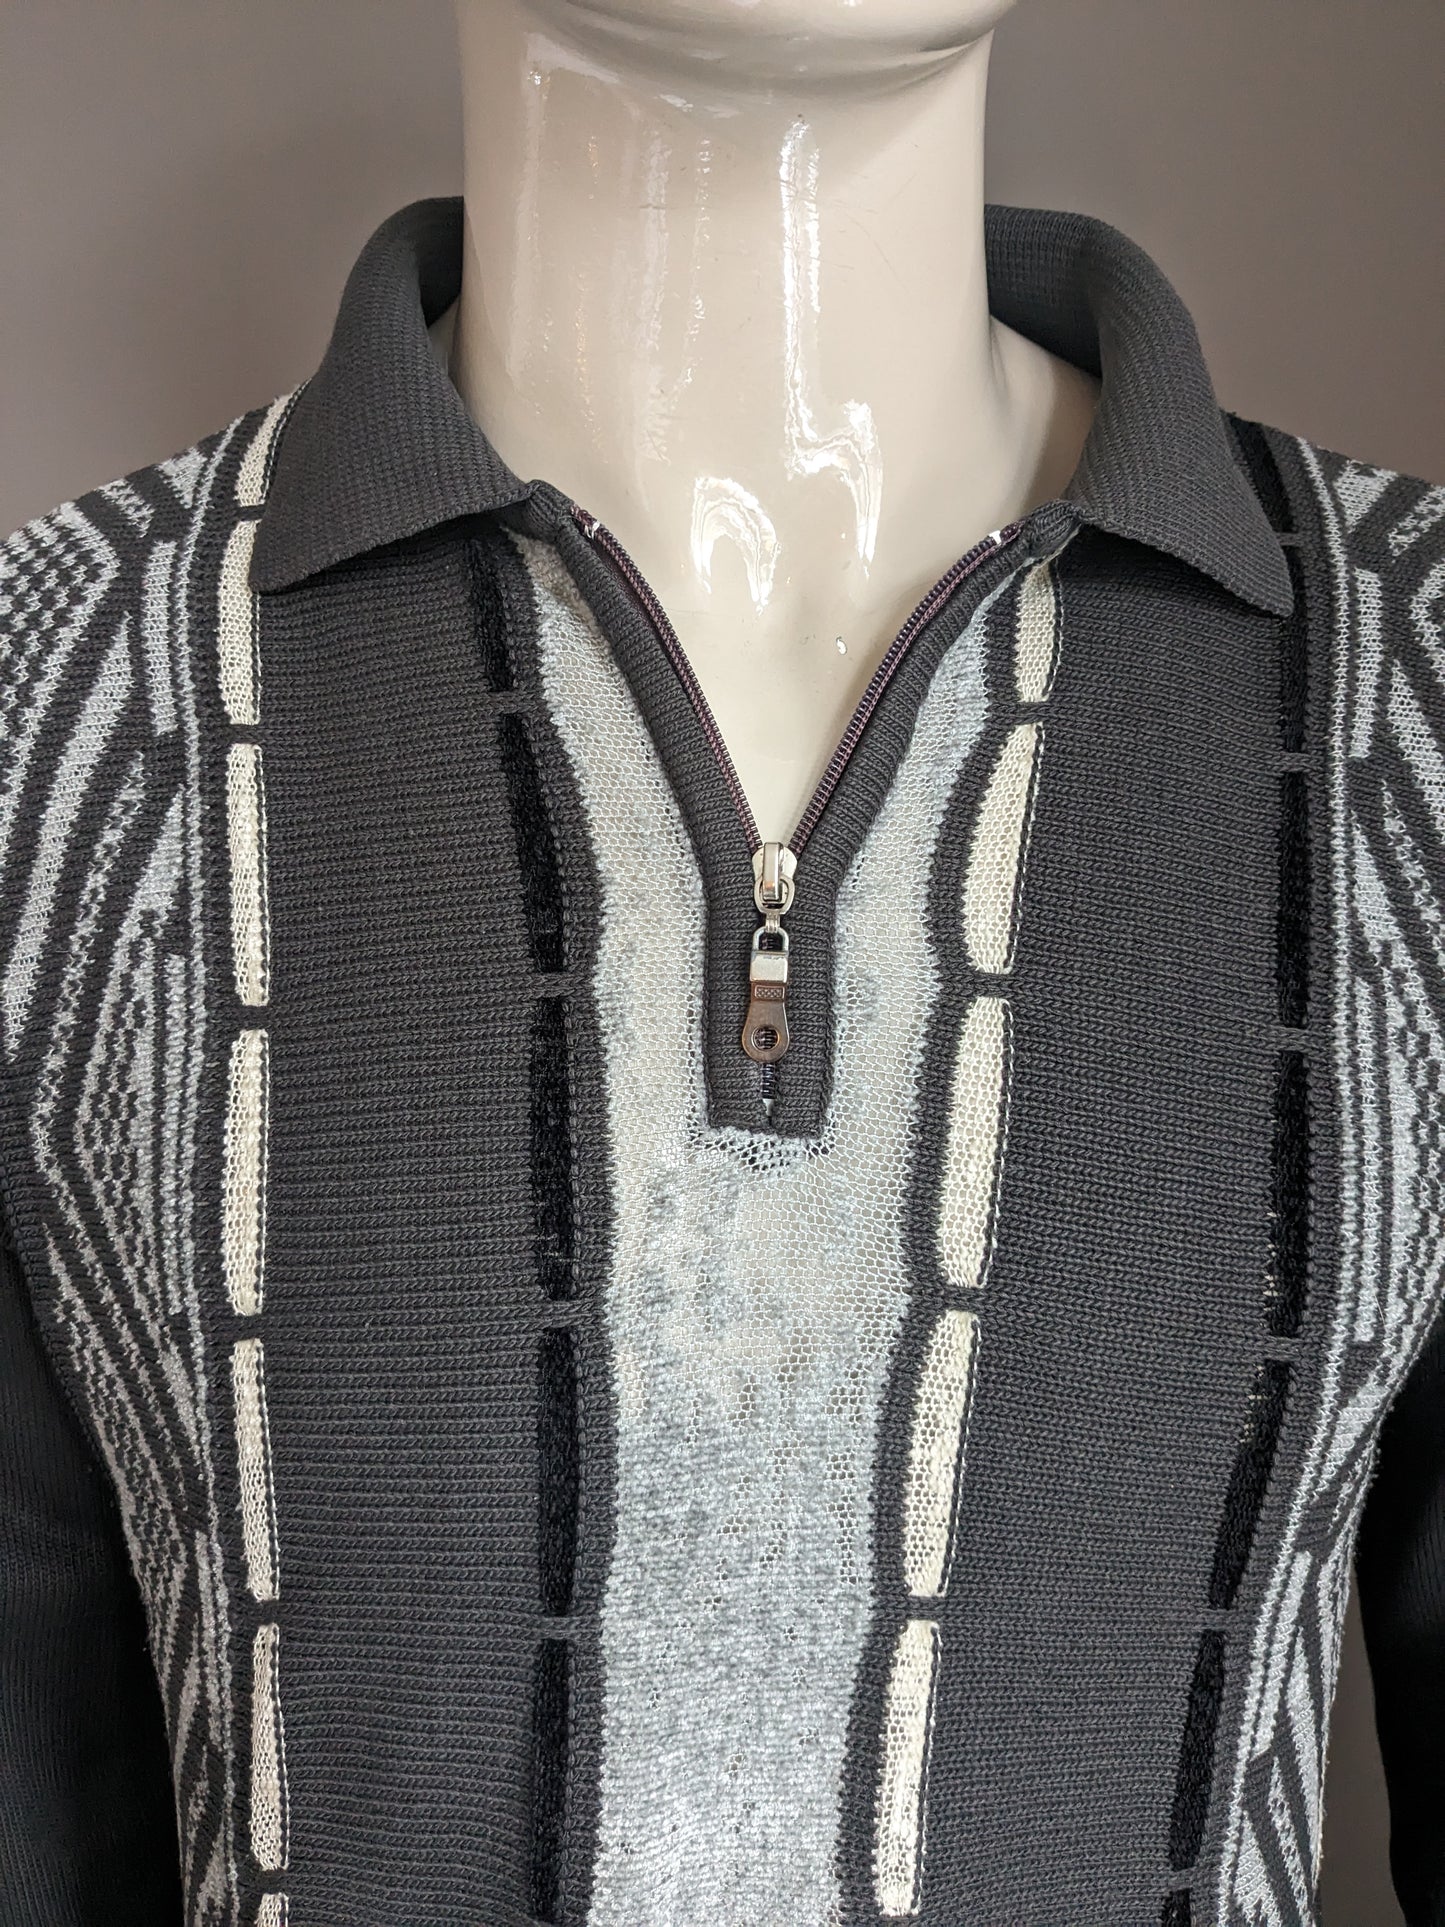 Vintage Sonne Pullover mit Reißverschluss. Grauster beige schwarz gefärbt. Größe L.